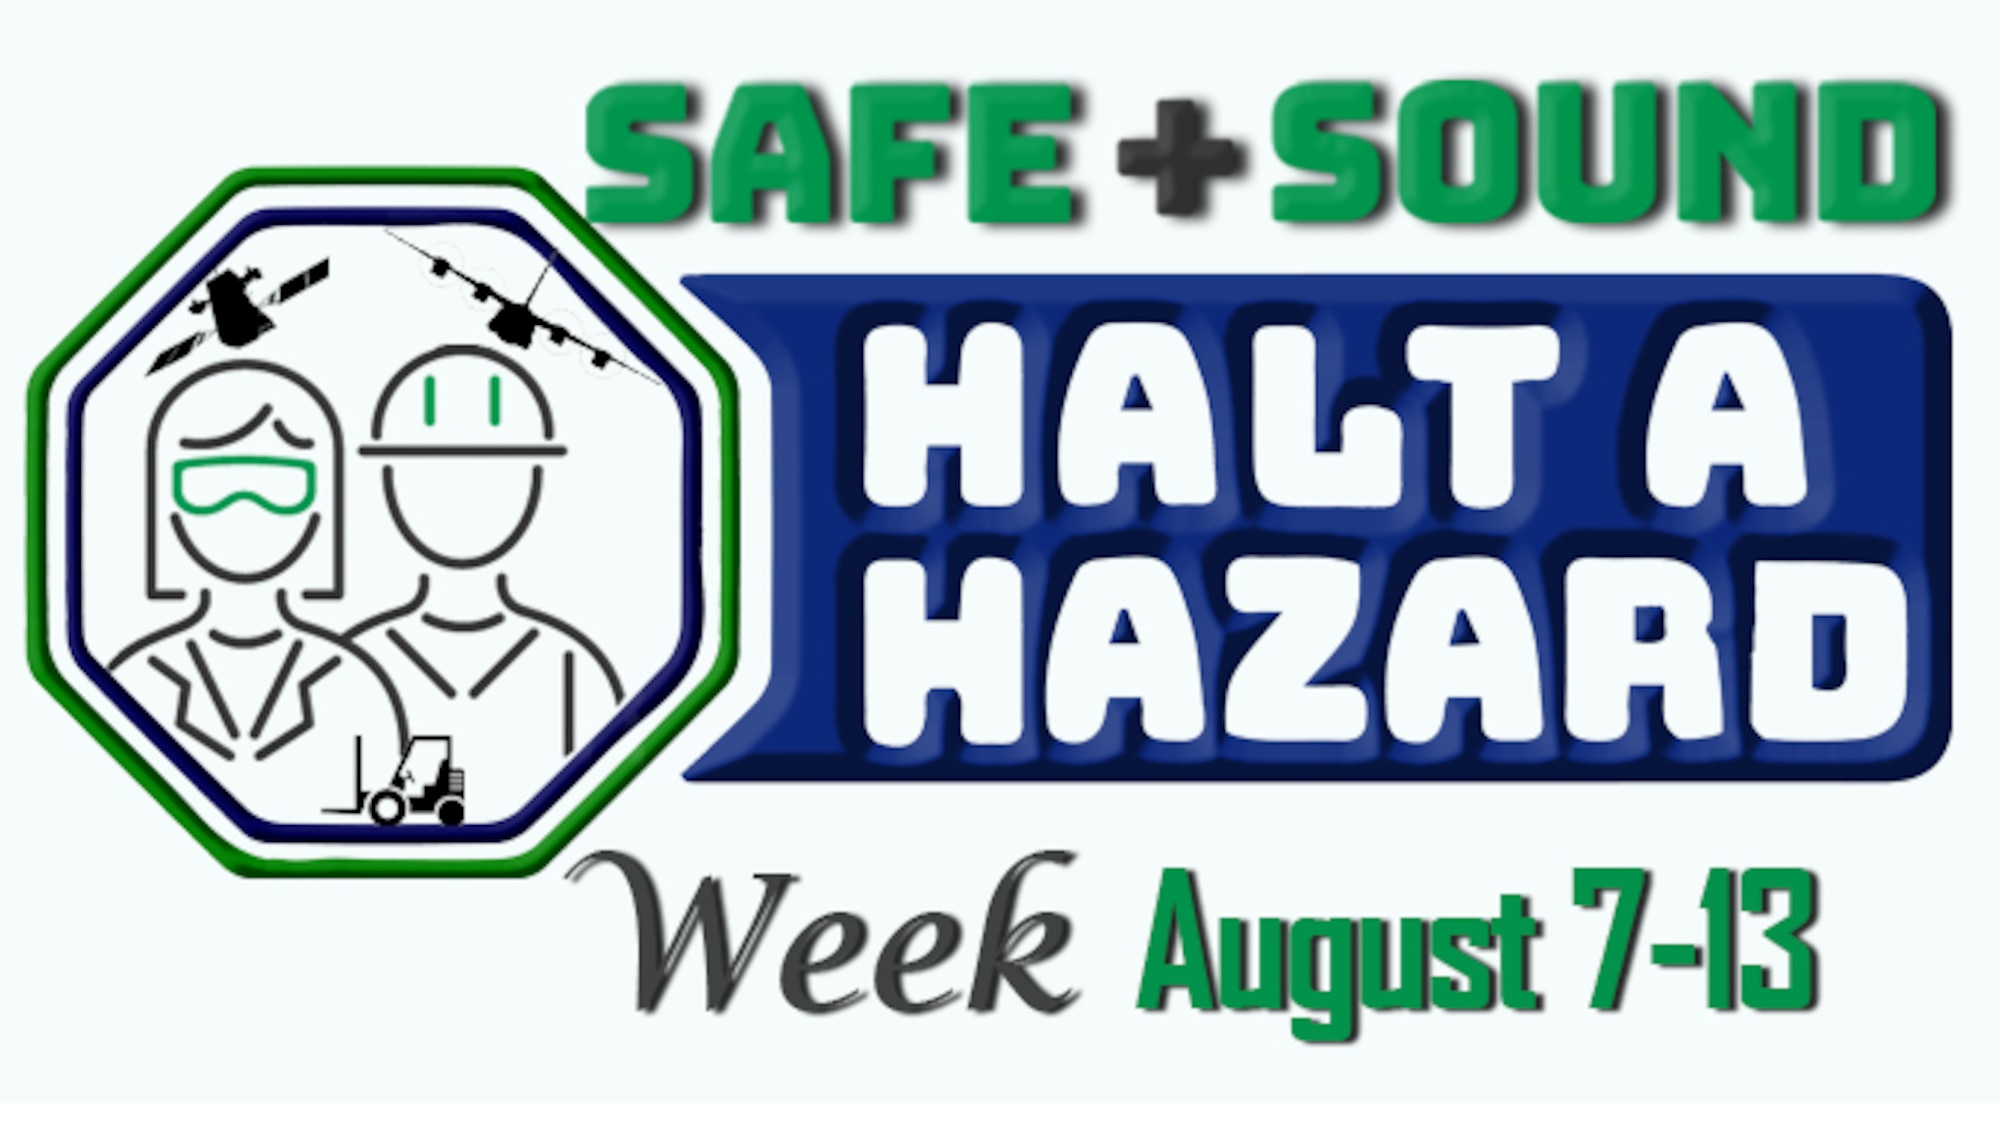 Safe + Sound Week Halt A Hazard